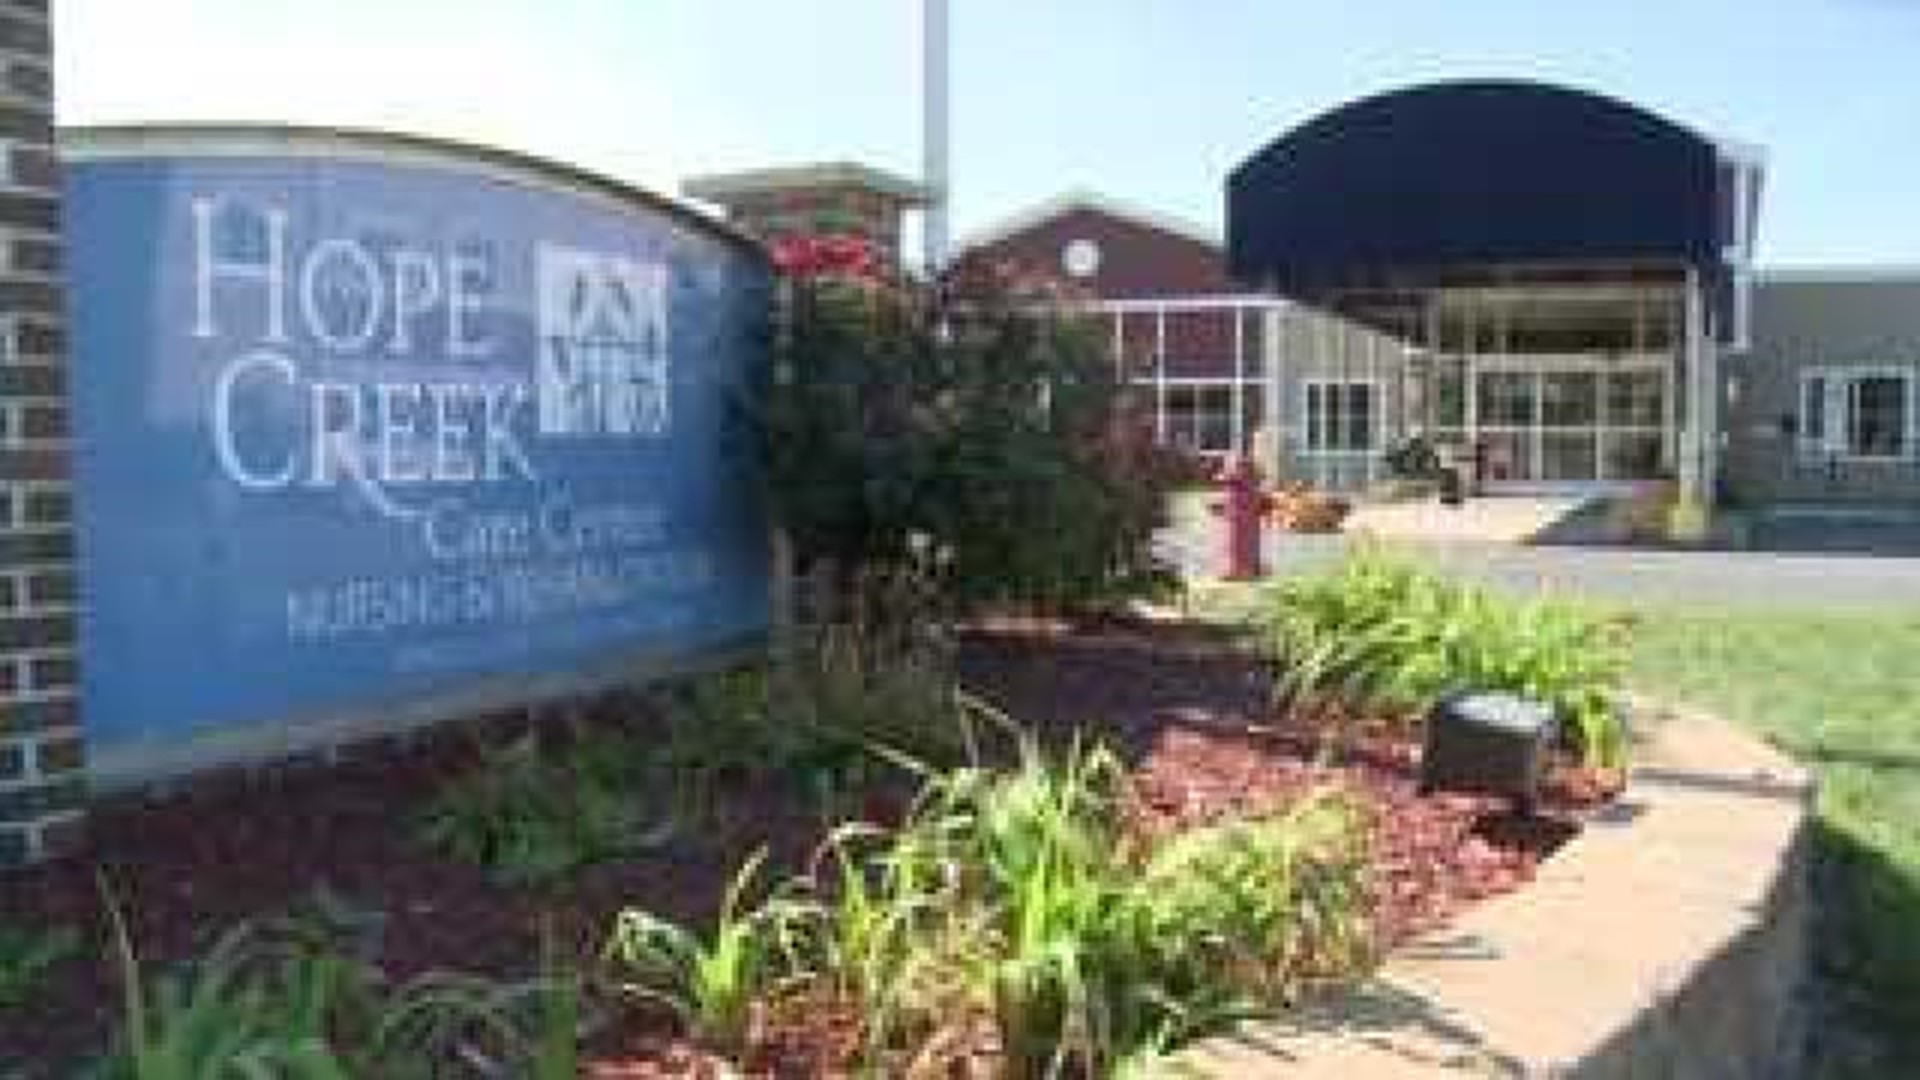 Hope Creek employees surprised by sales talk